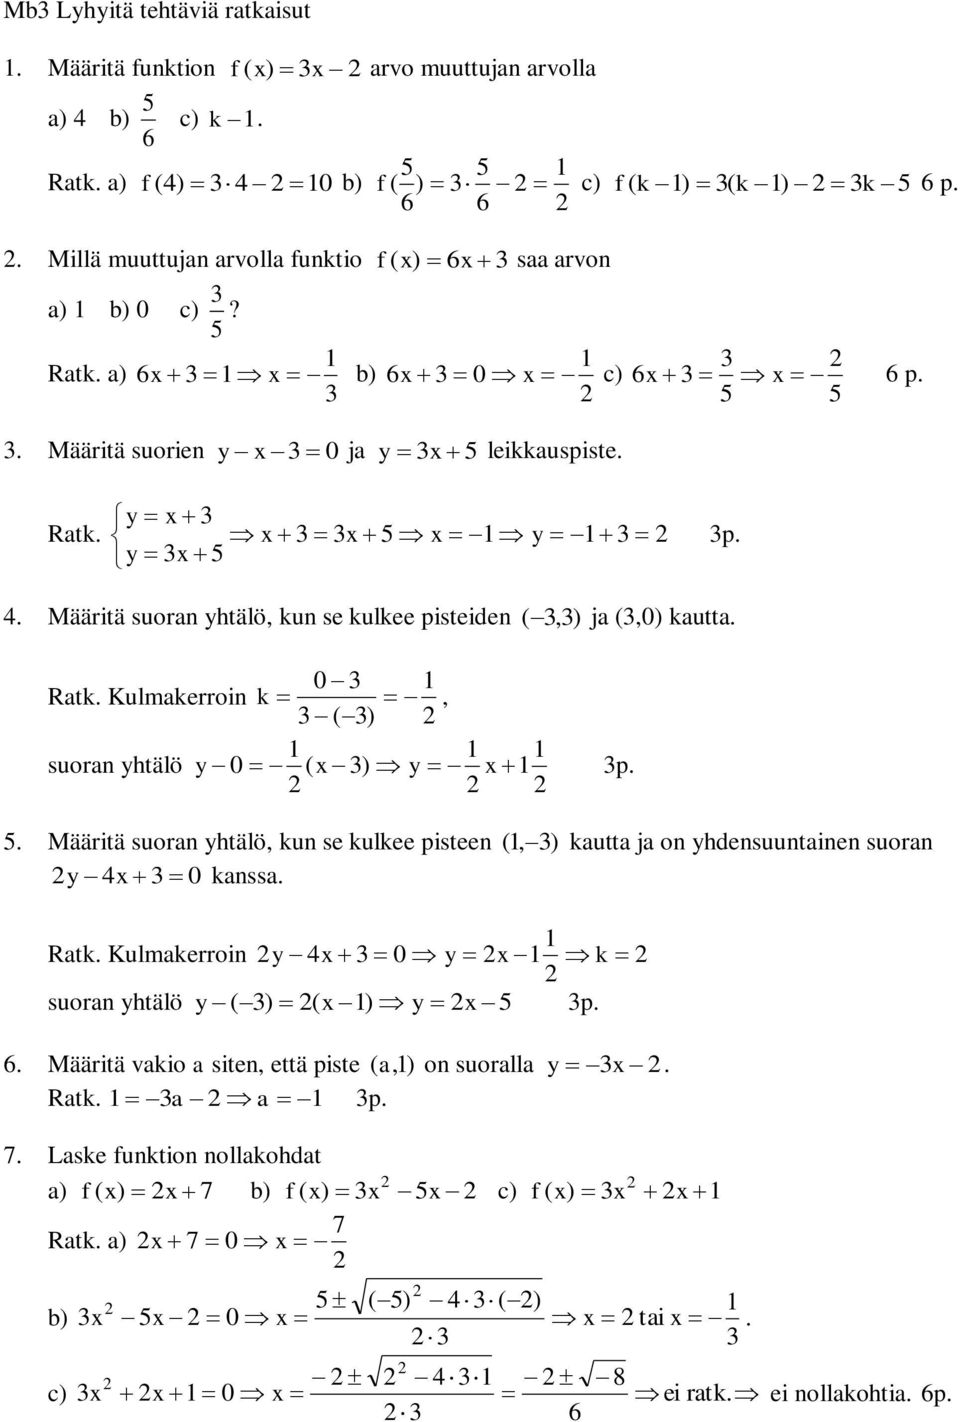 Ratk a) 6 b) 6 0 c) 6 6 p Määritä suorien y 0 ja y leikkauspiste y Ratk y y p Määritä suoran yhtälö, kun se kulkee pisteiden (,) ja (,0) kautta 0 Ratk Kulmakerroin k, ( ) suoran yhtälö